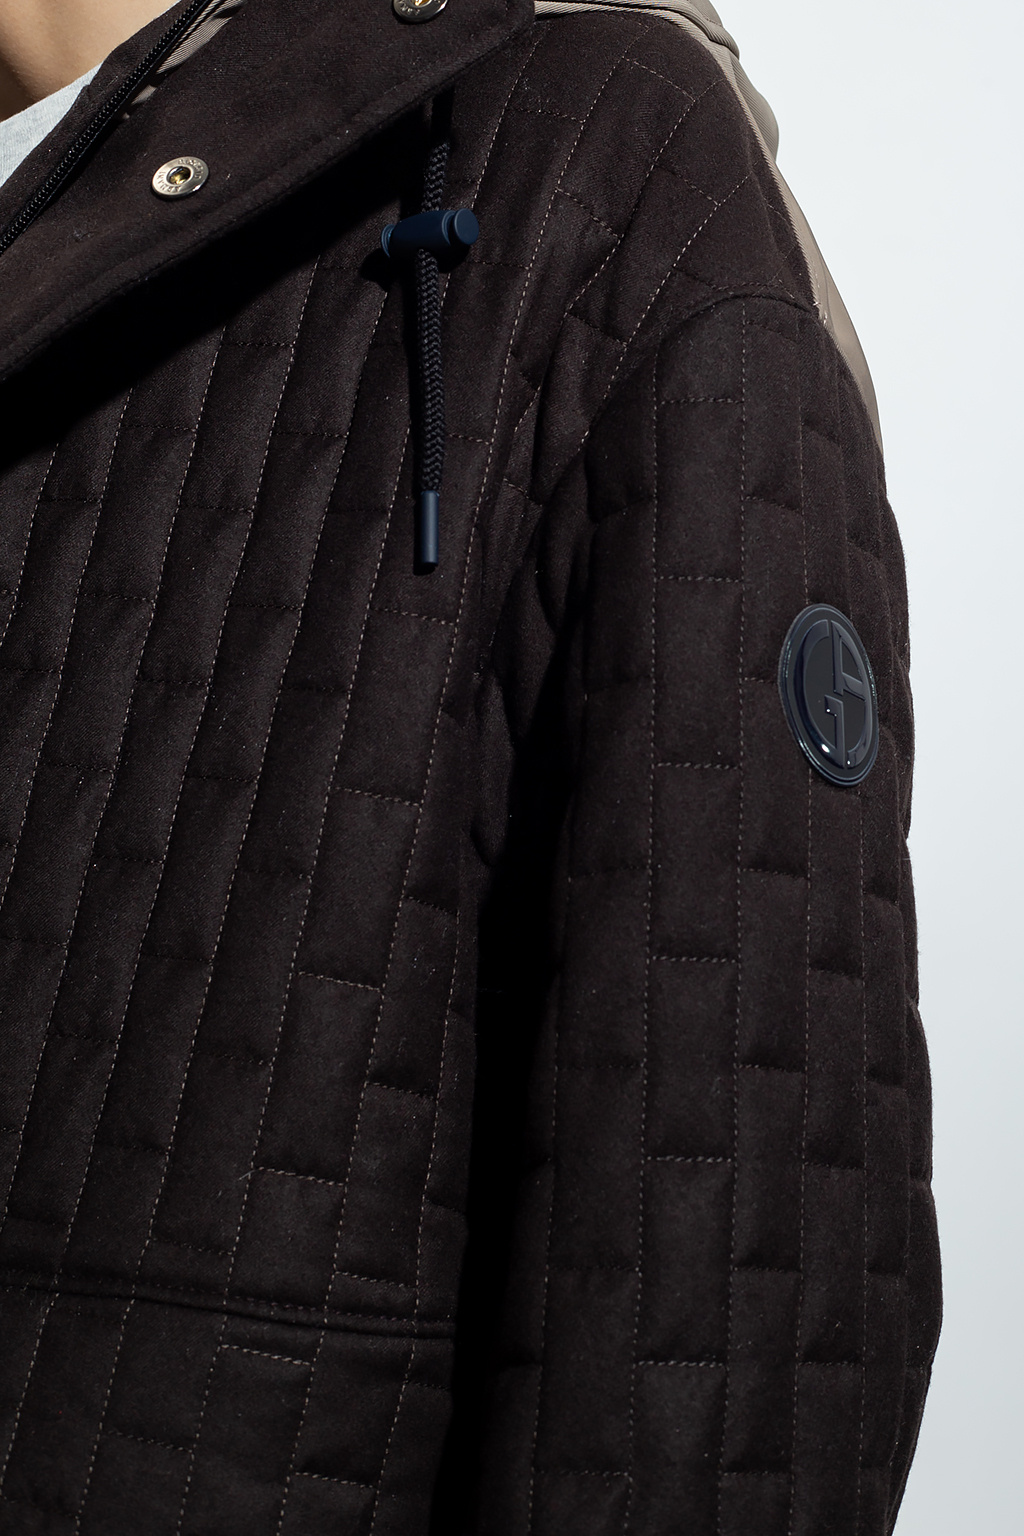 Giorgio Armani Giorgio Armani logo-embroidered bomber jacket